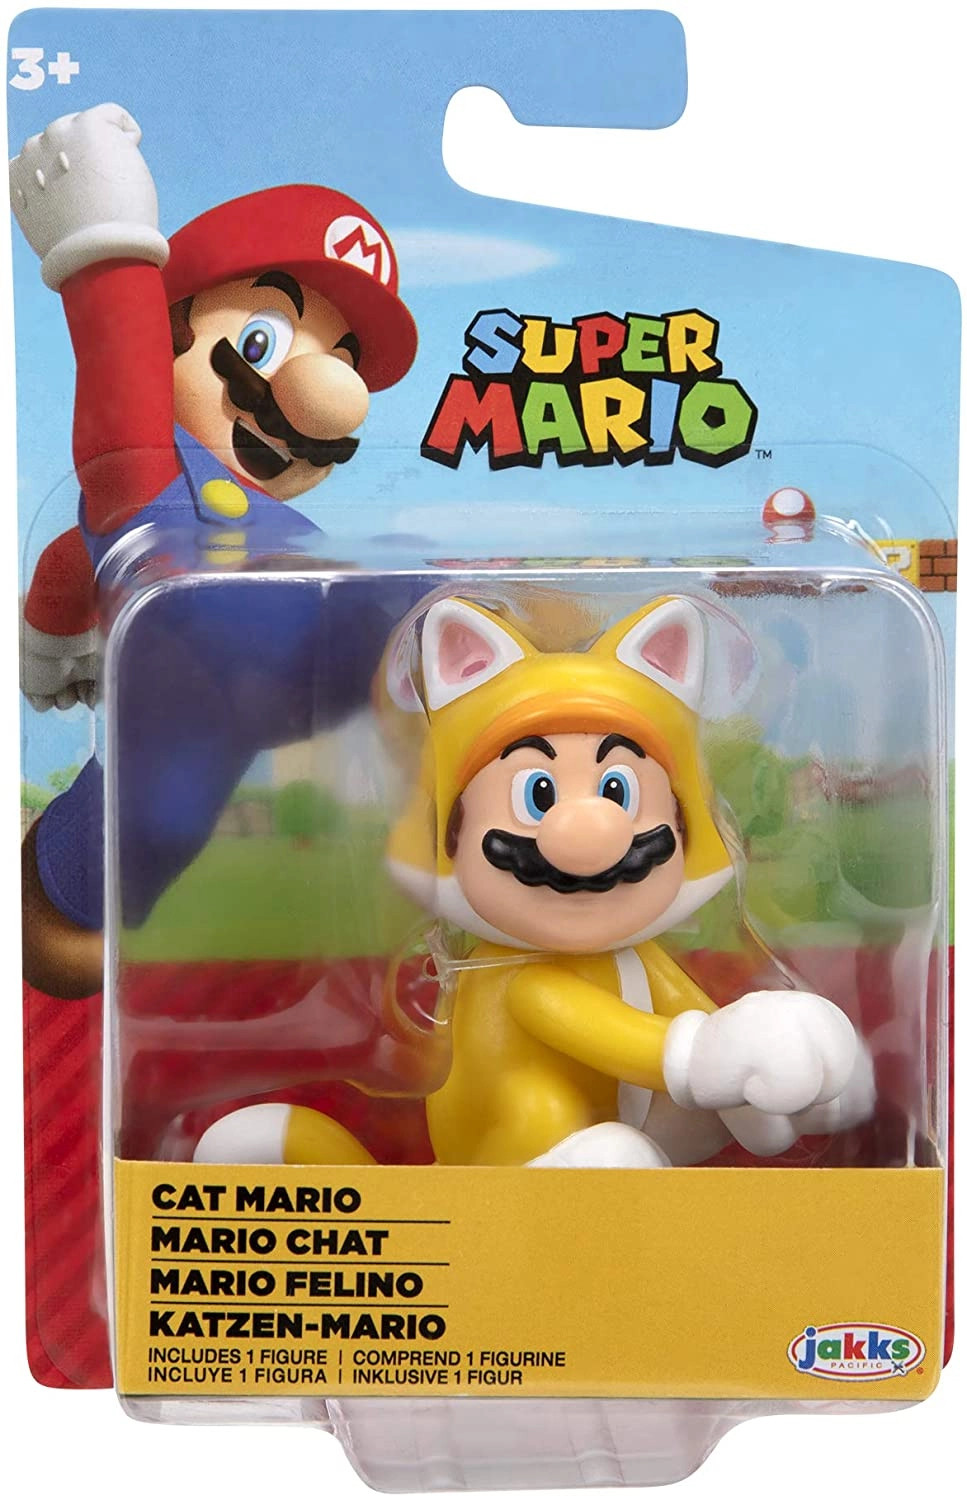 Super Mario Mini Action Figure - Cat Mario